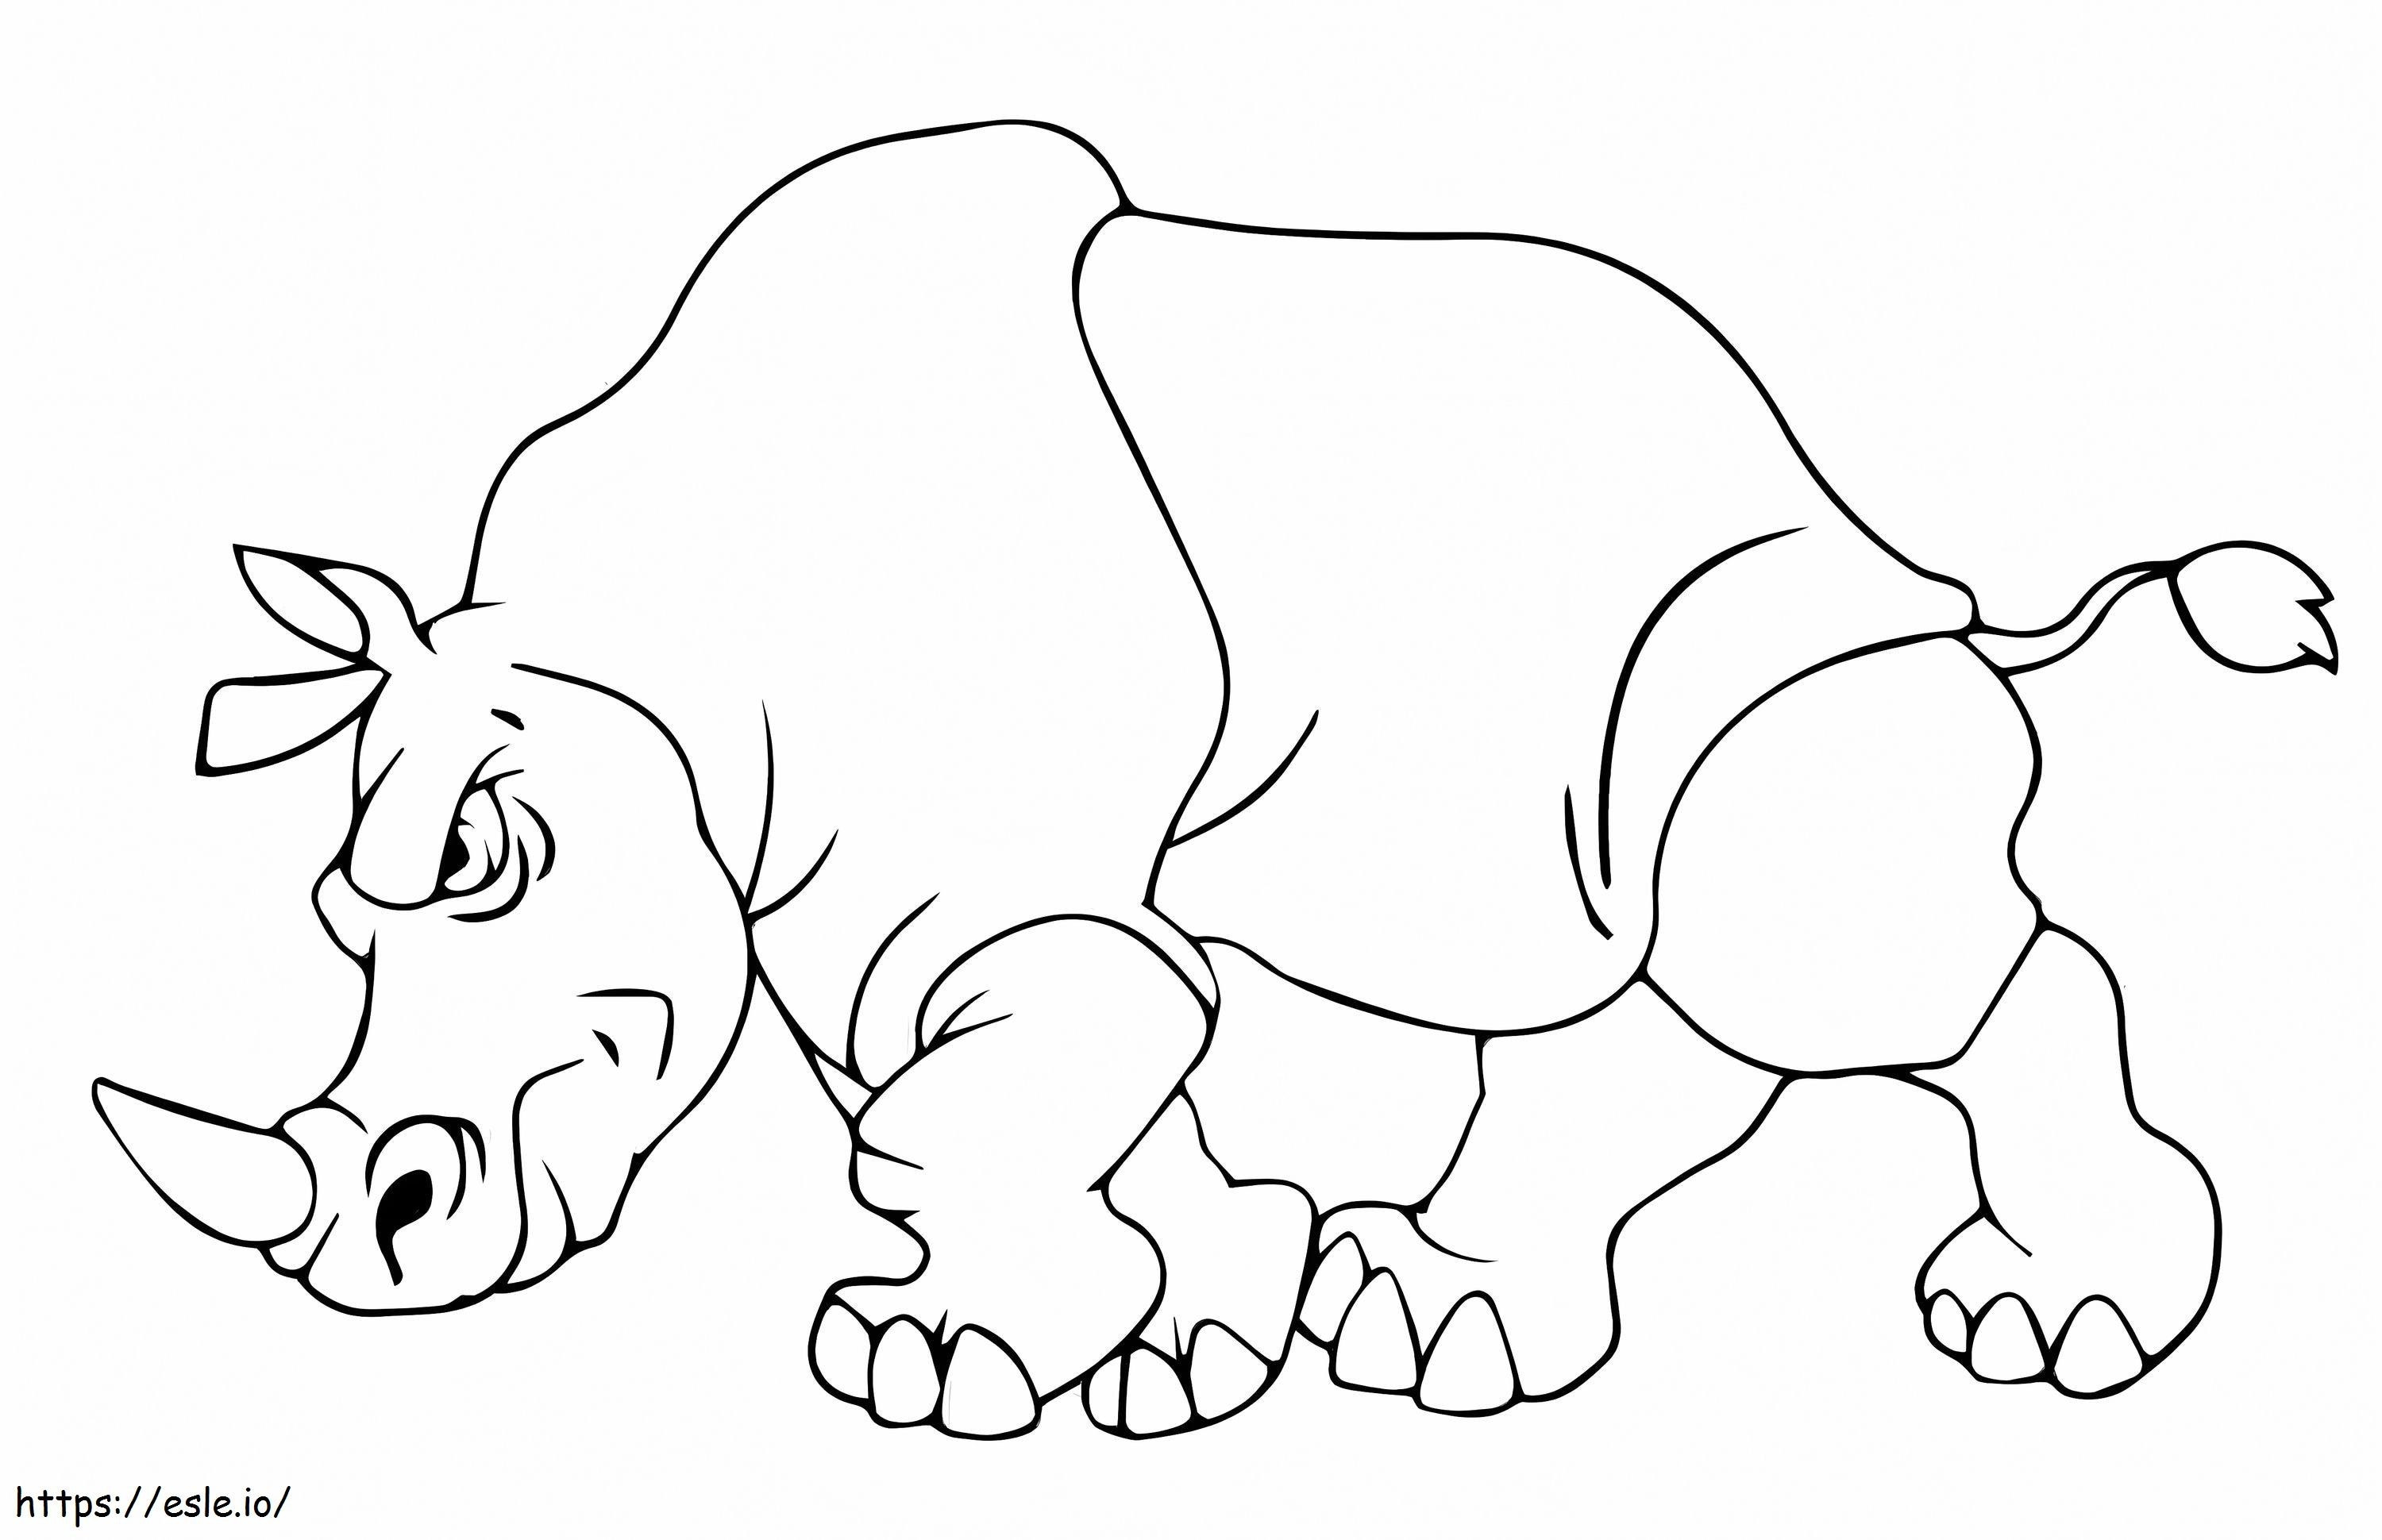 Dühös Rhino kifestő